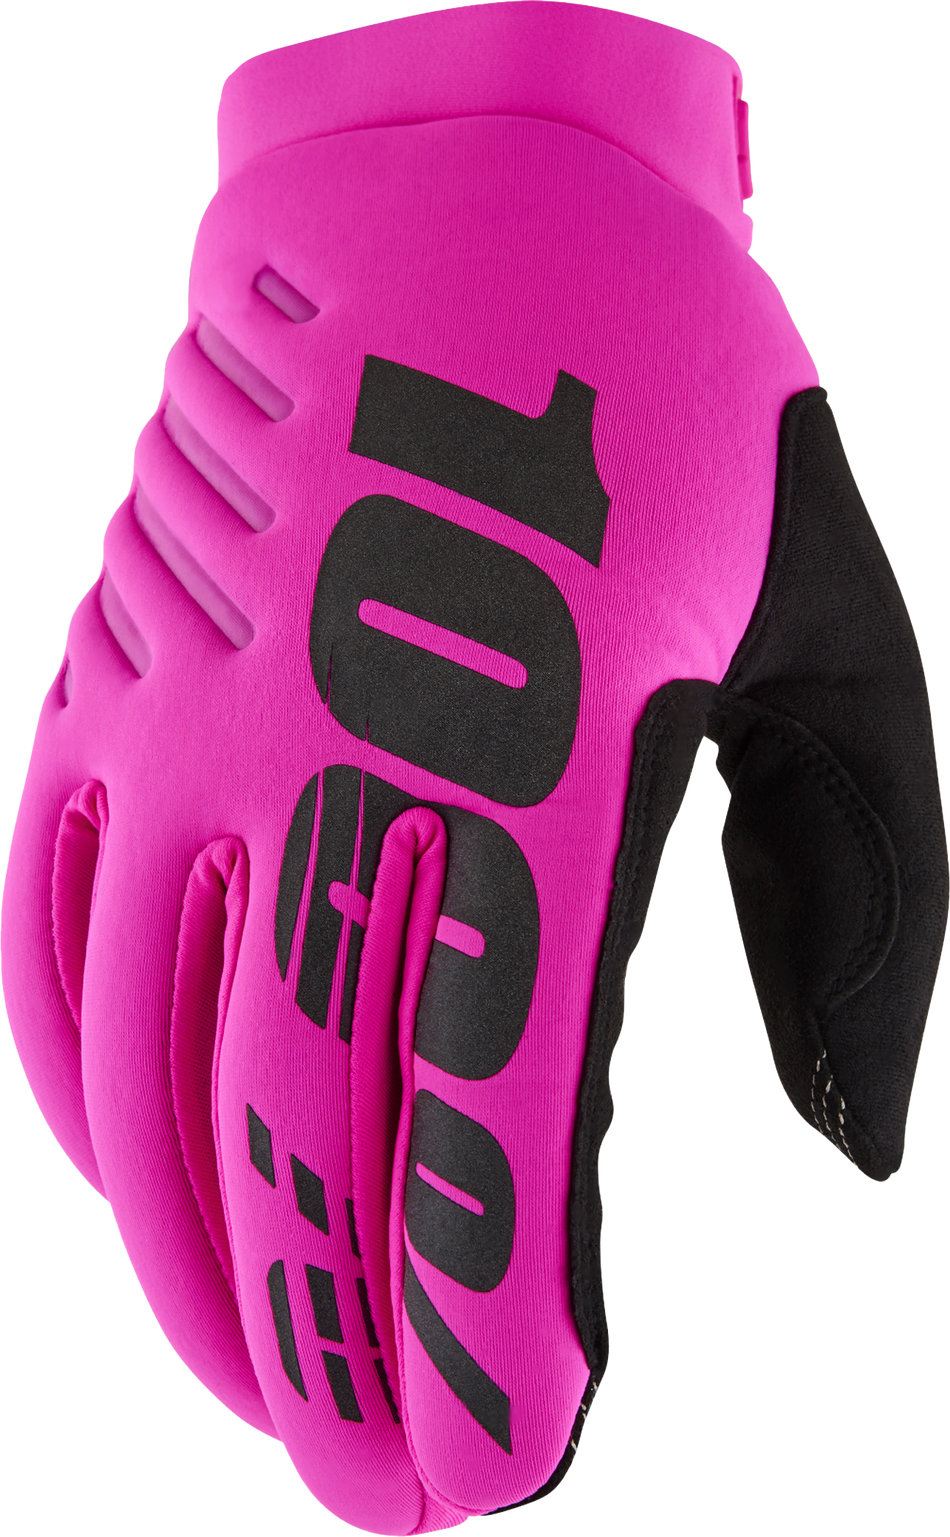 100% Brisker Women's Gloves Neon Pink/Black Xl 10005-00009